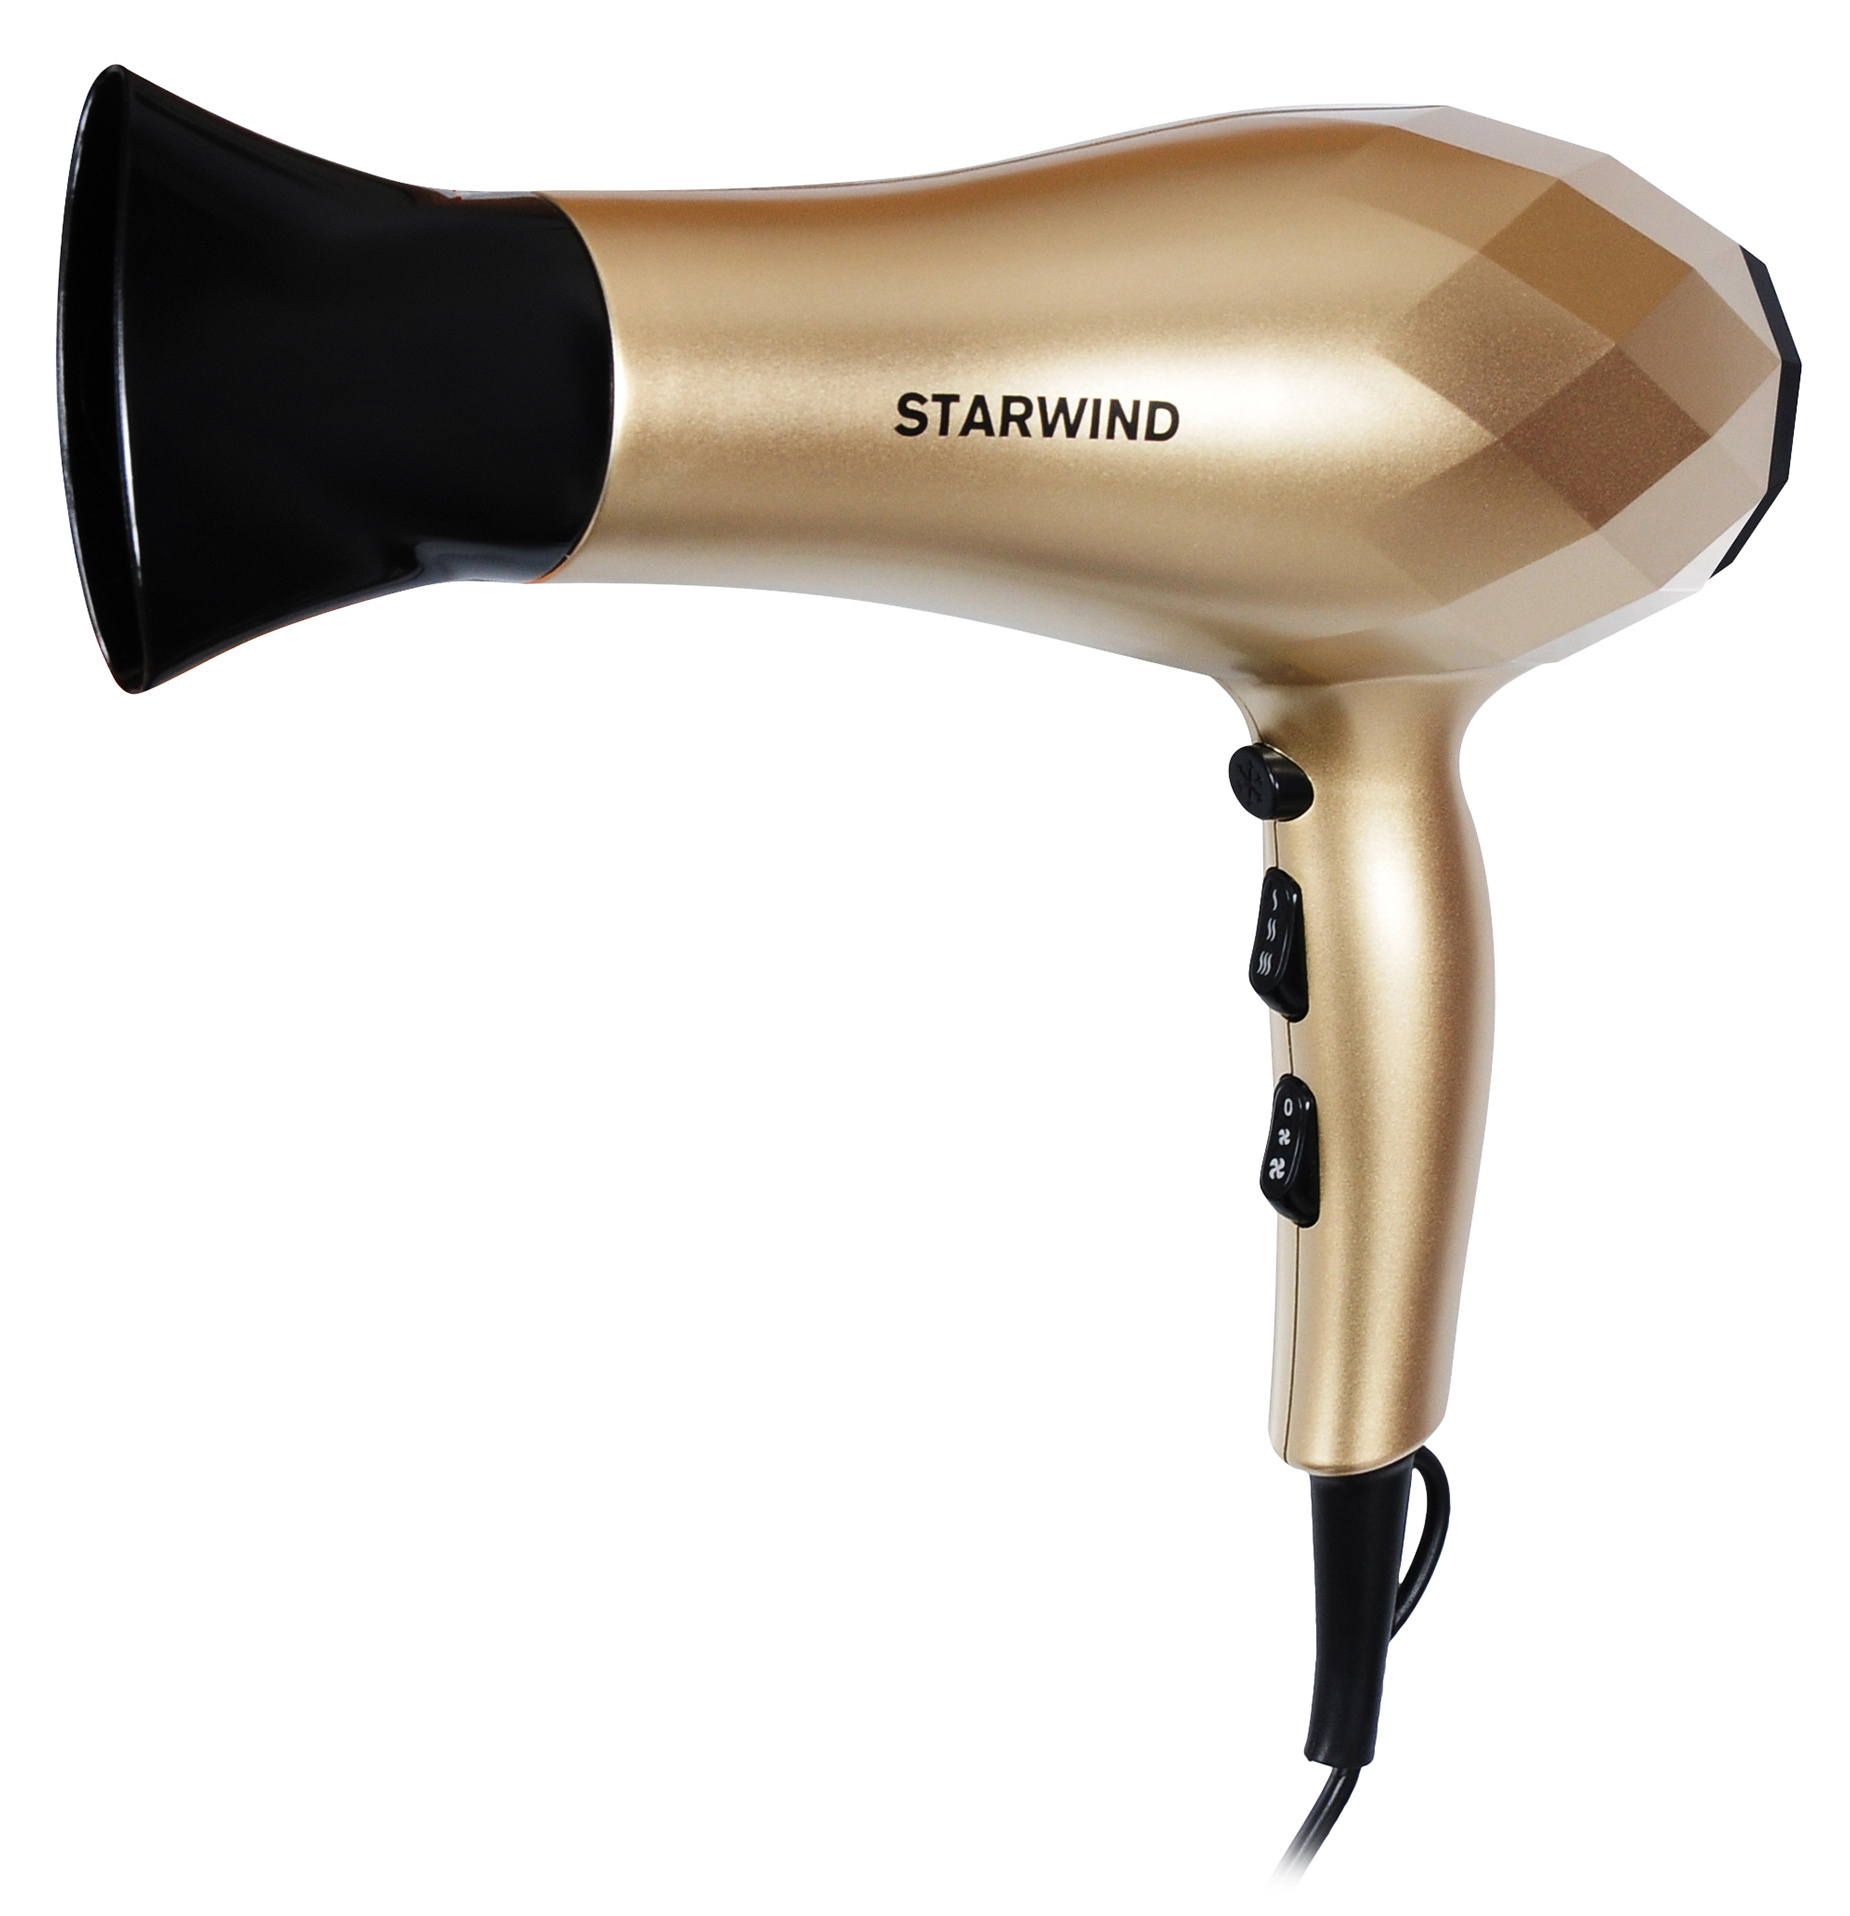 Фен Starwind SHP8110 шампань от магазина Старвинд